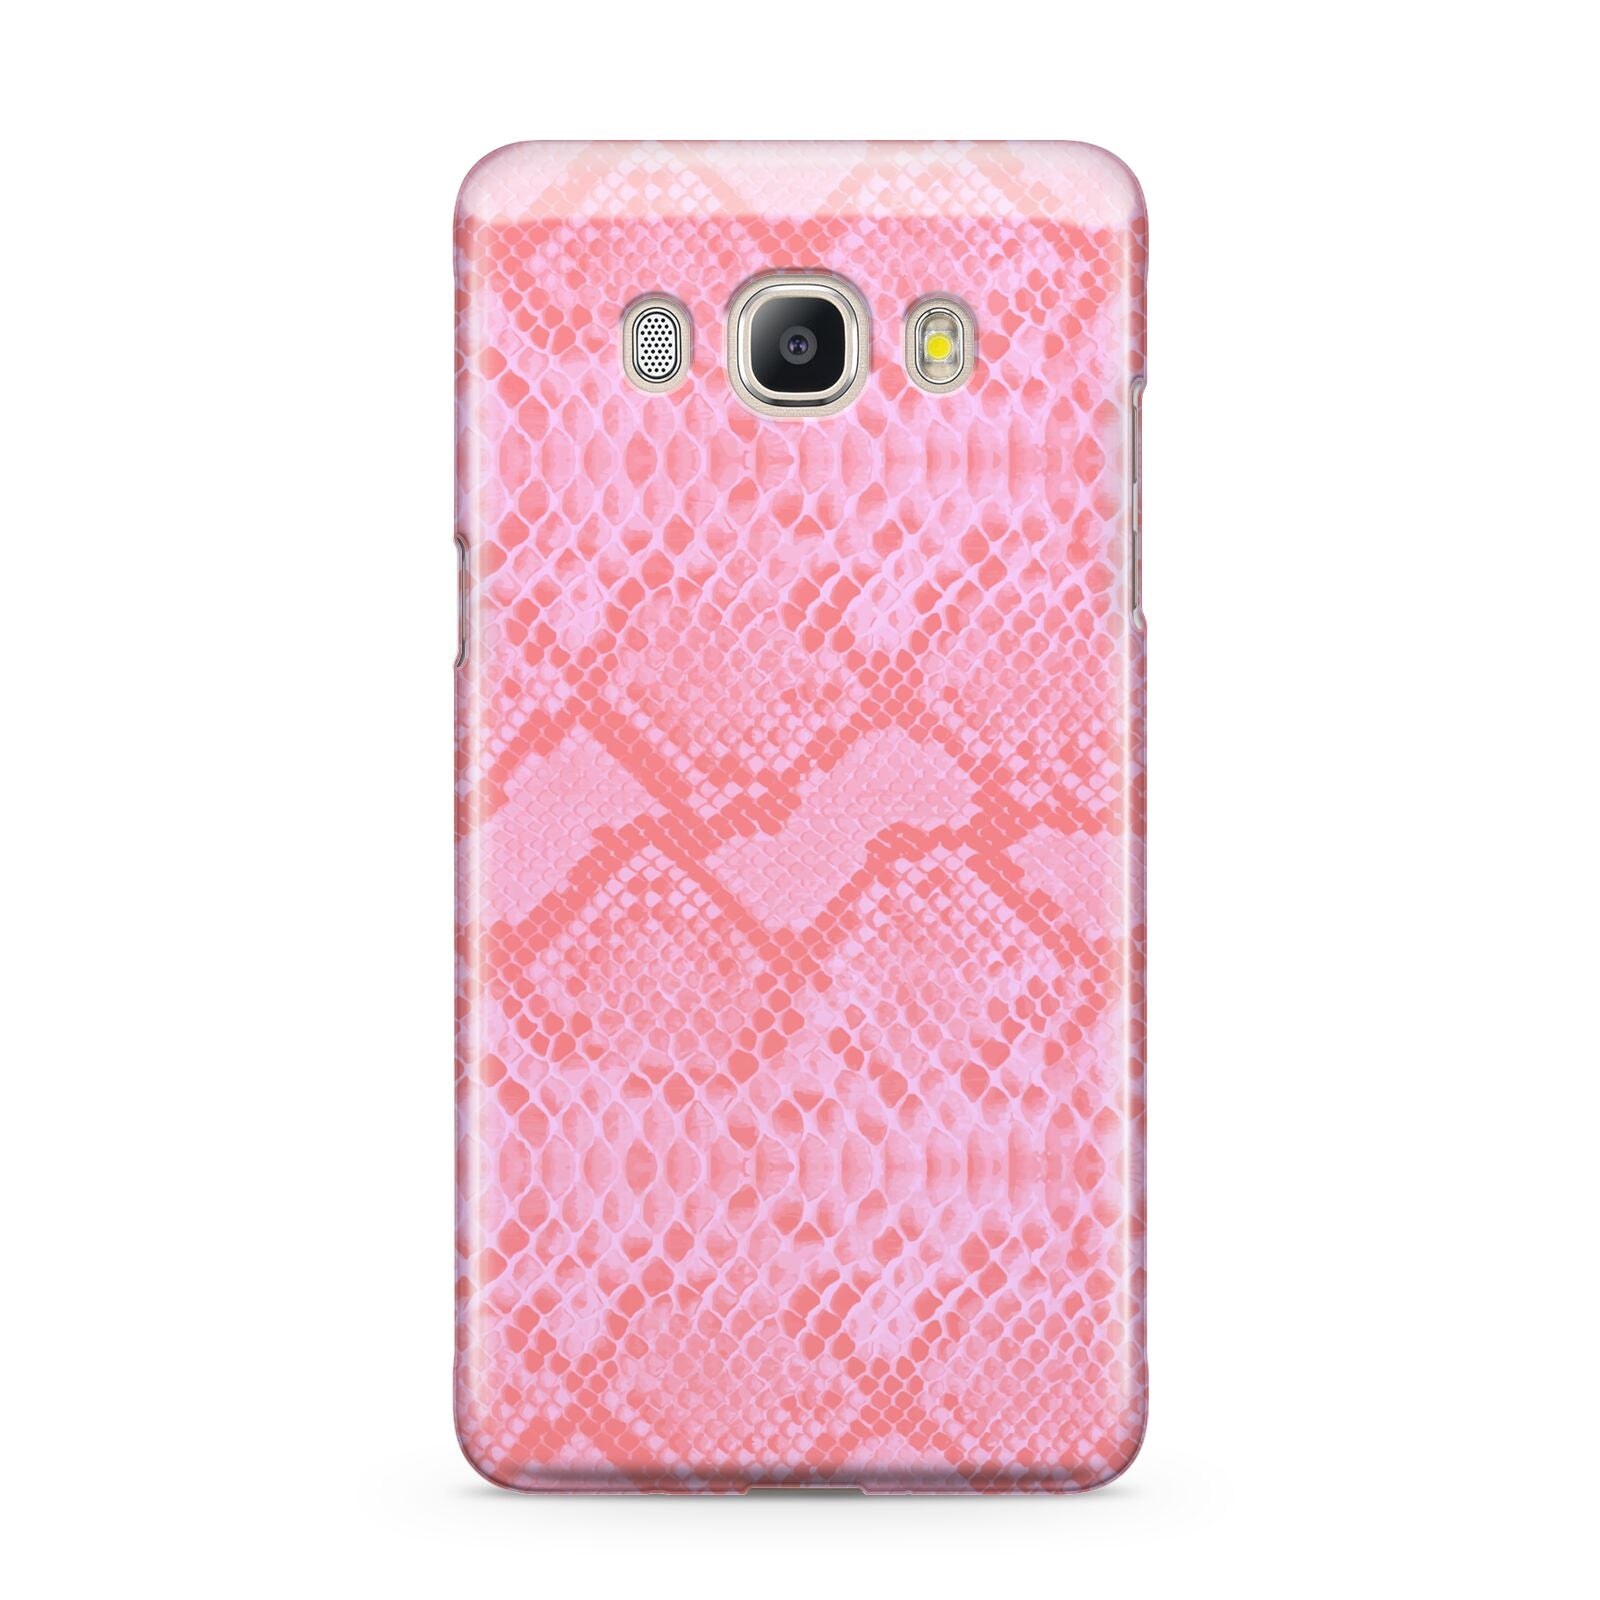 Pink Snakeskin Samsung Galaxy J5 2016 Case